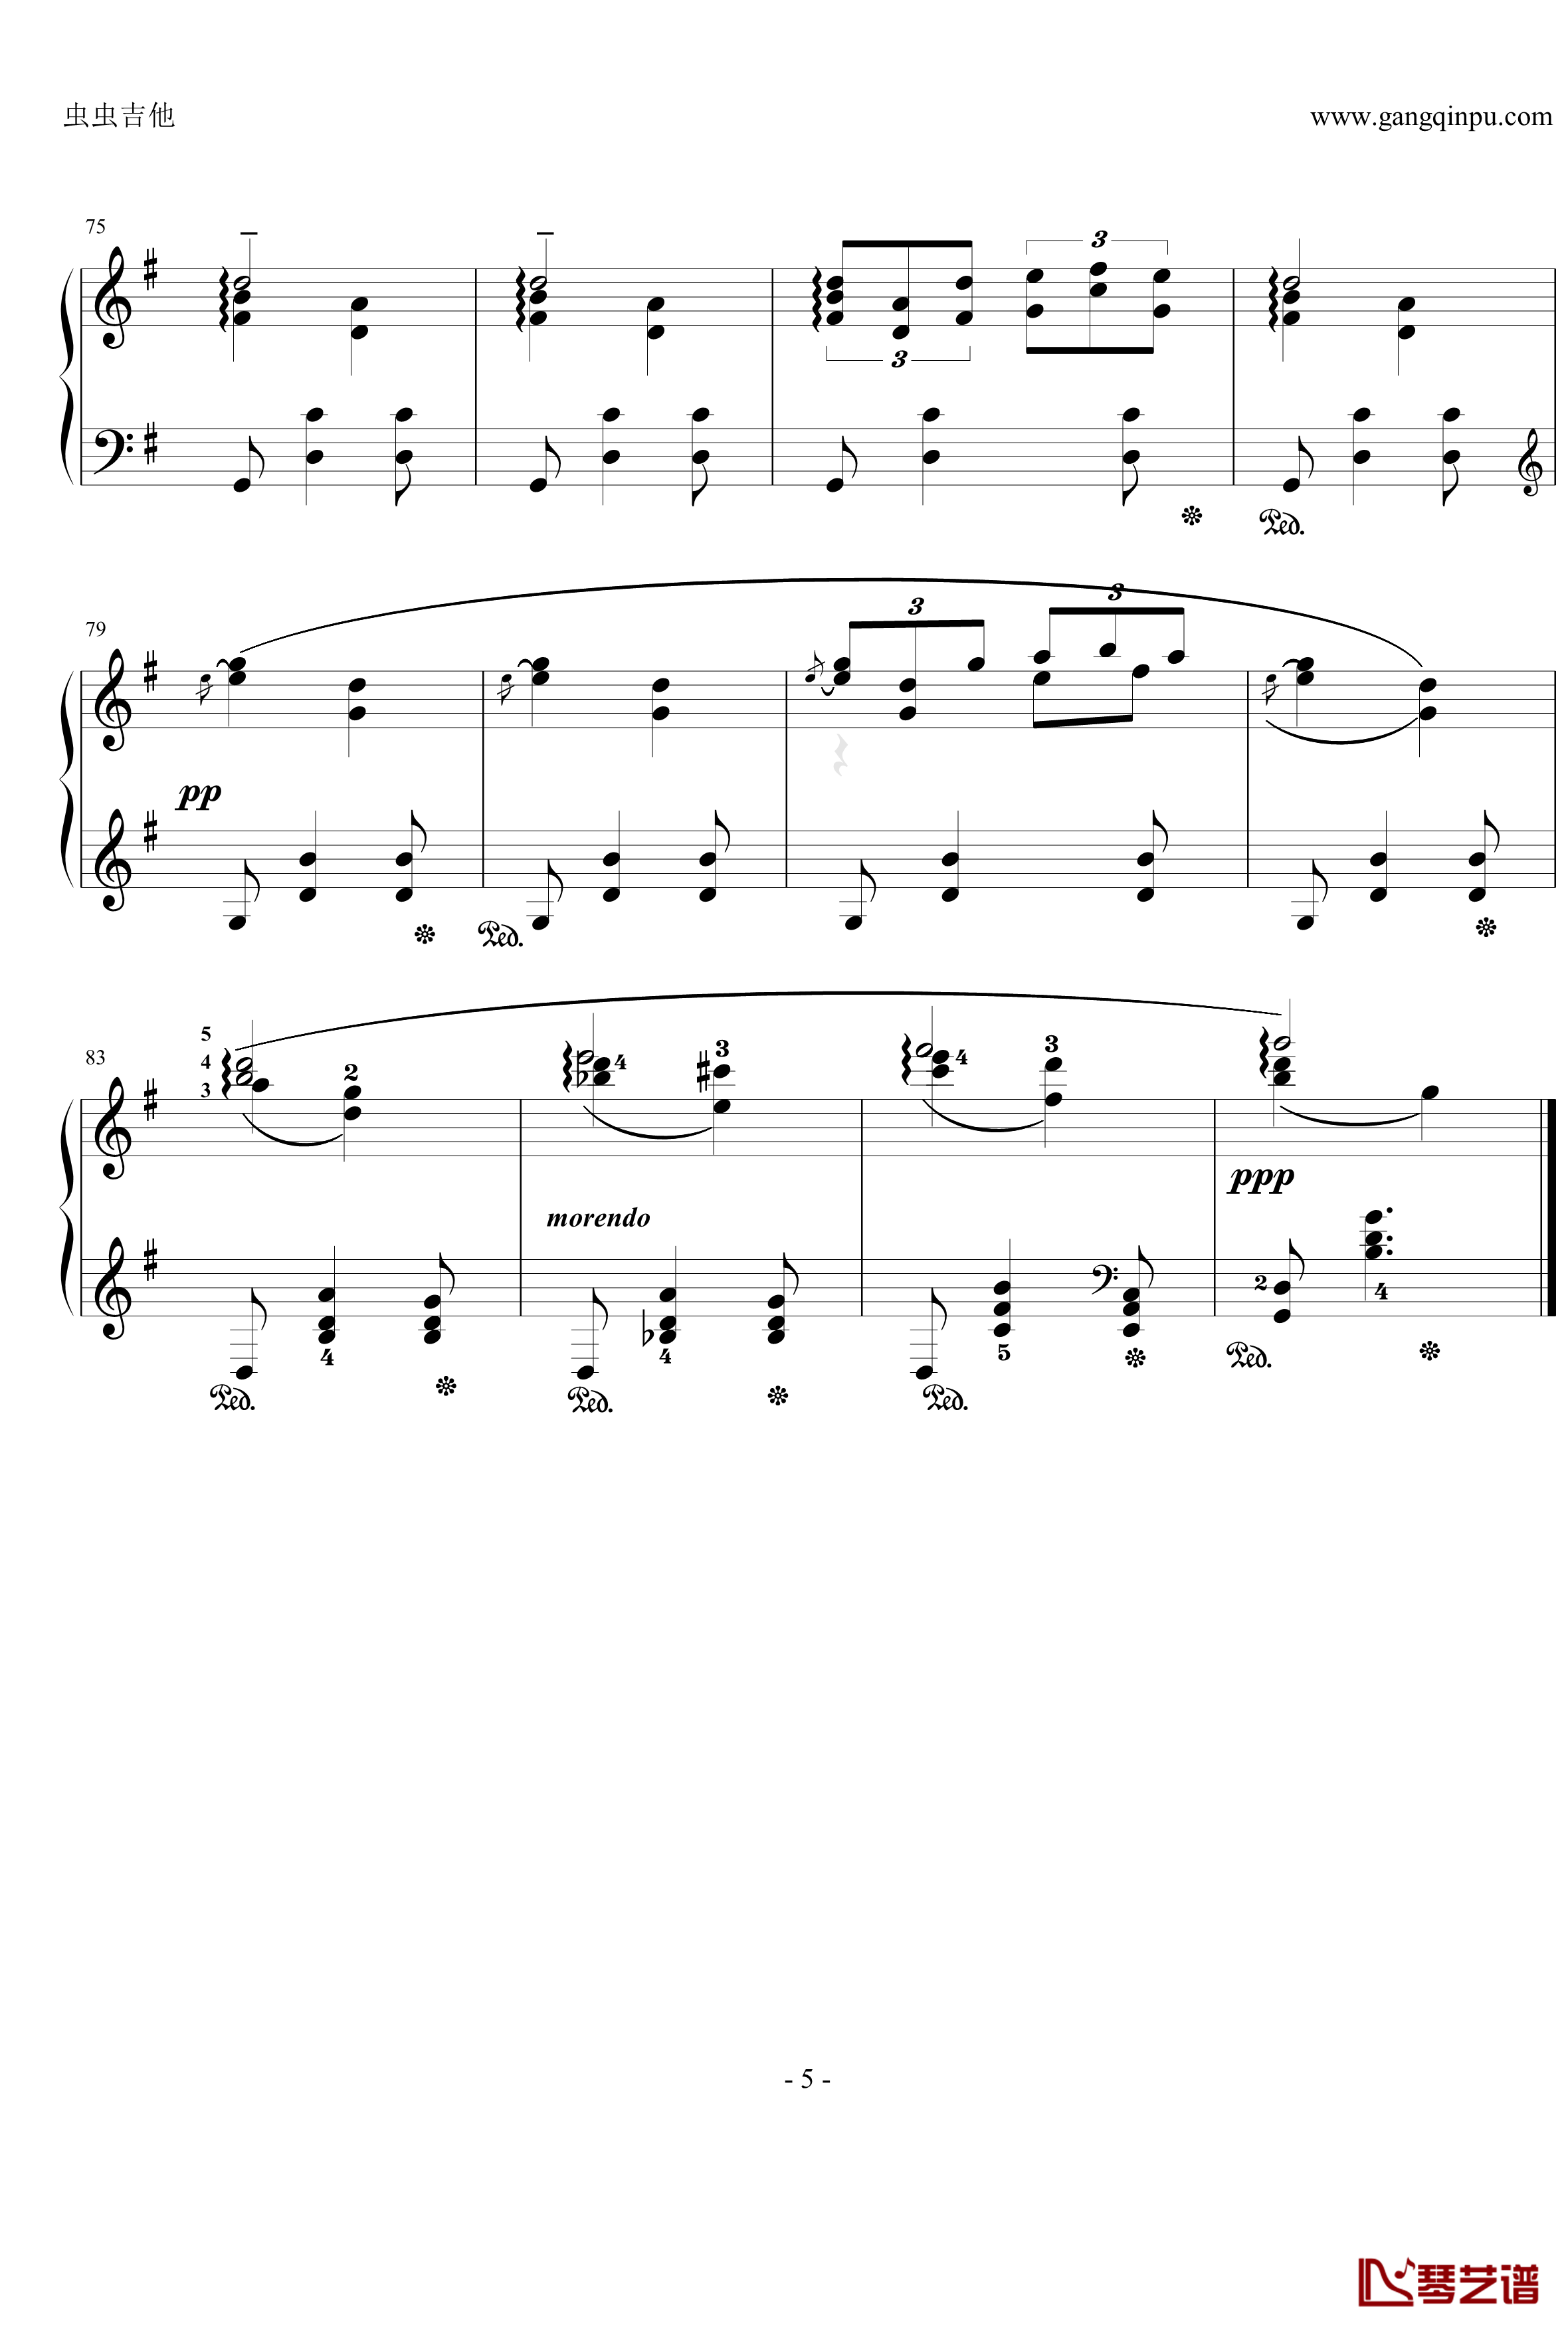 摇篮曲钢琴谱-格里格5